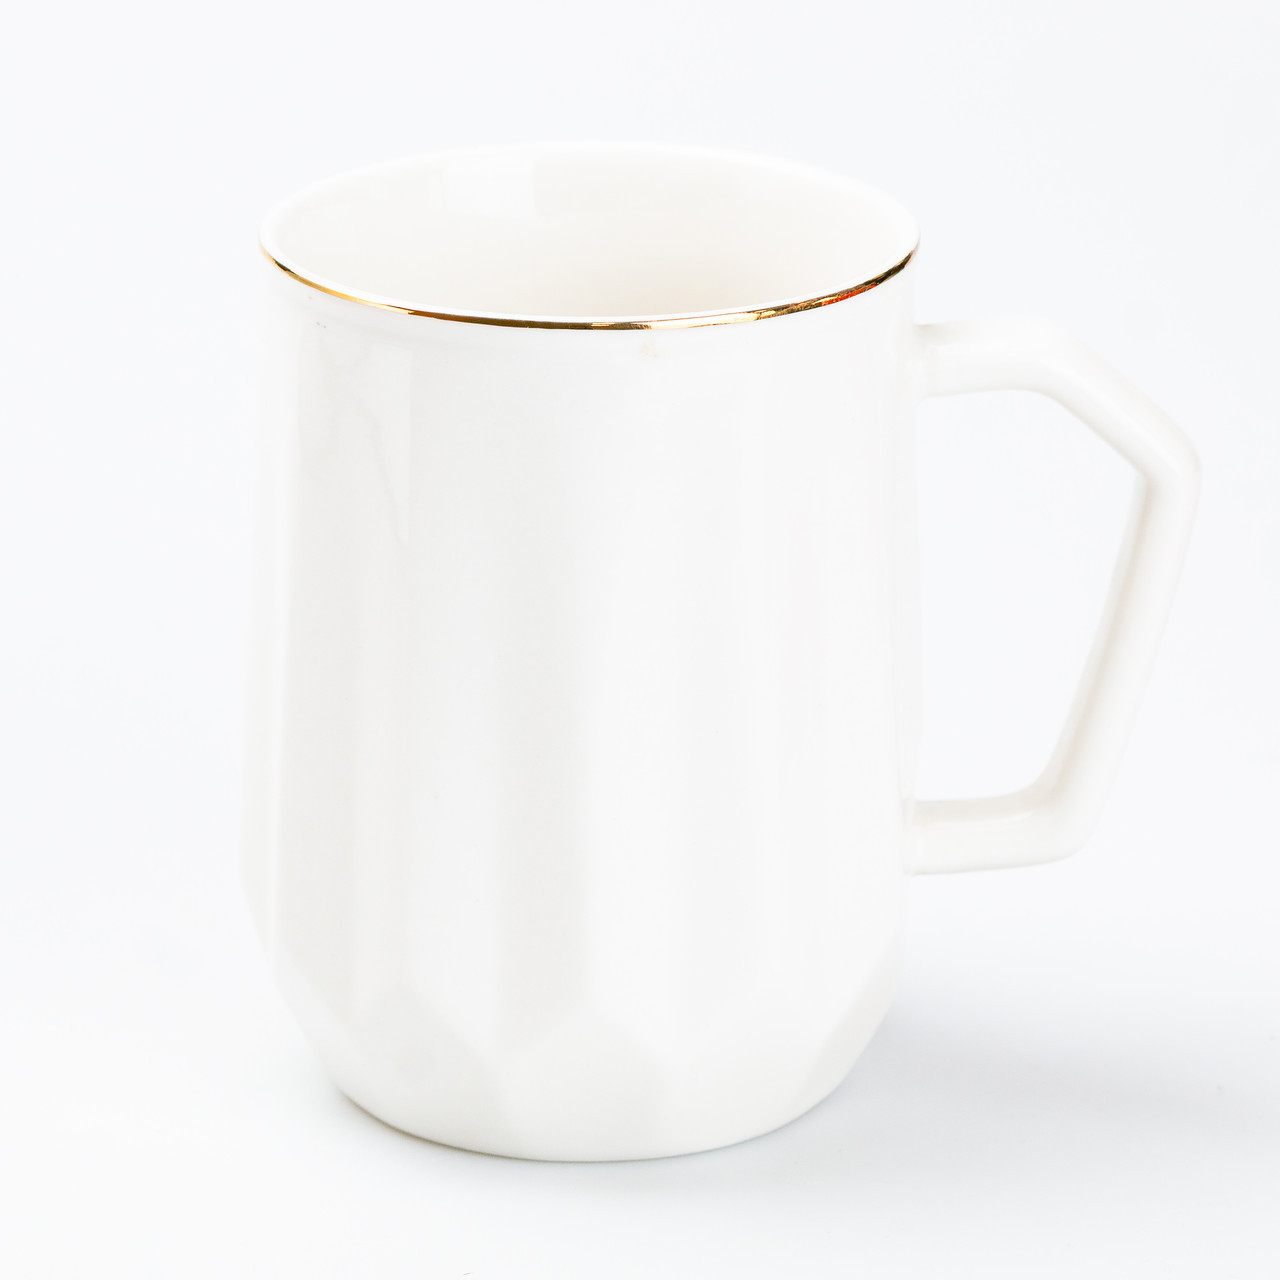 Чашка керамічна для чаю та кави 400 мл кружка універсальна Біла